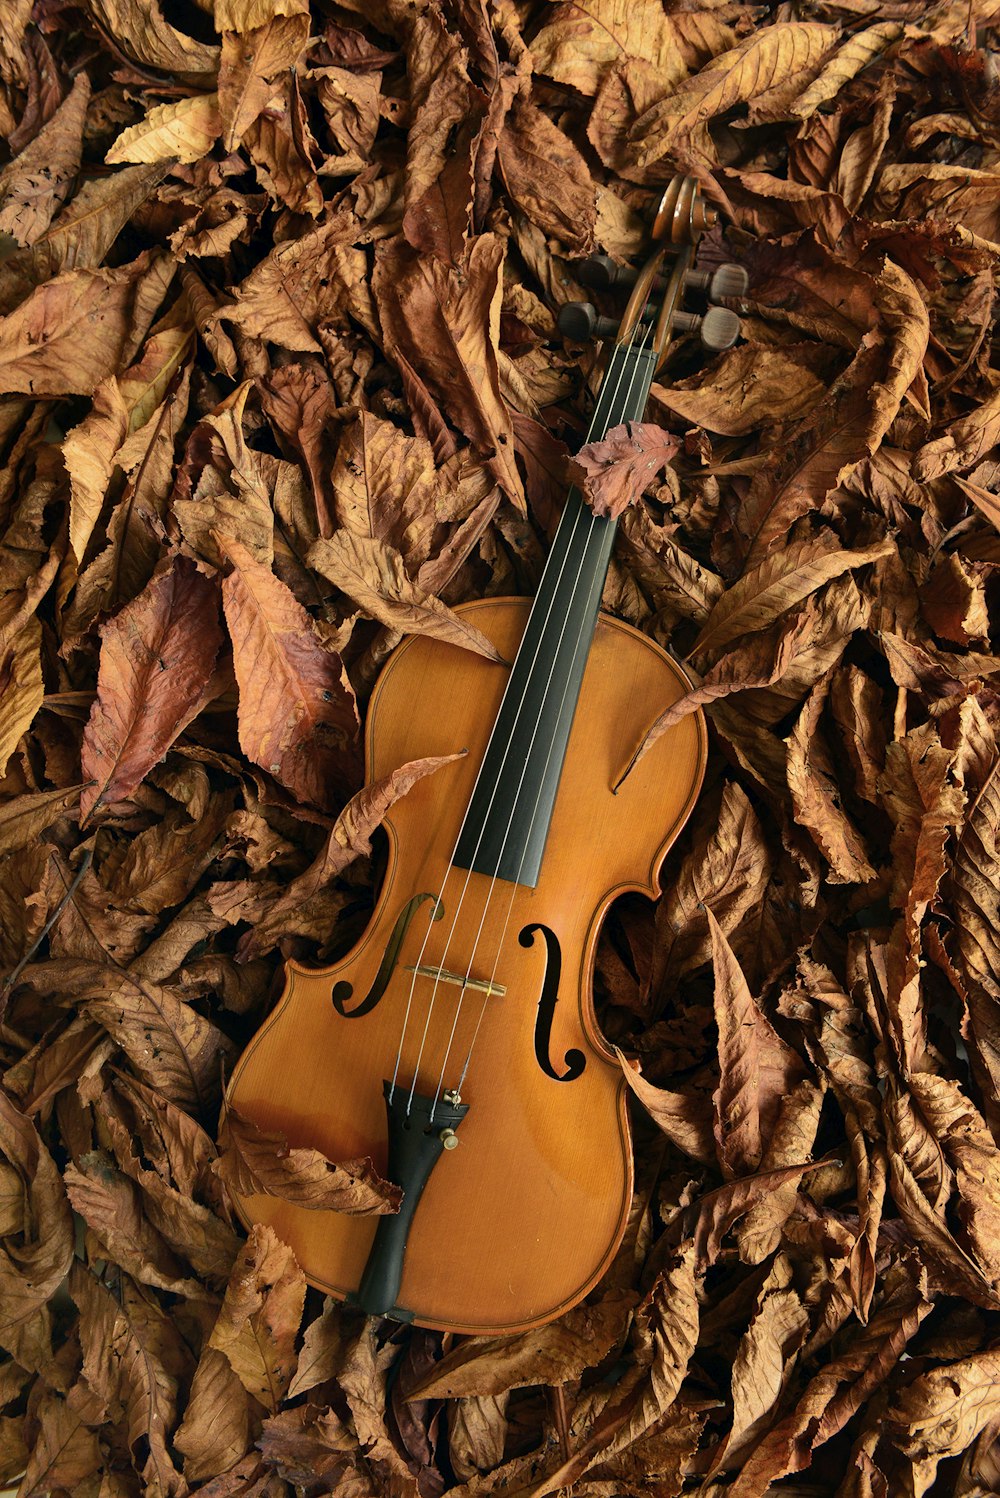 violín marrón sobre hojas secas marrones